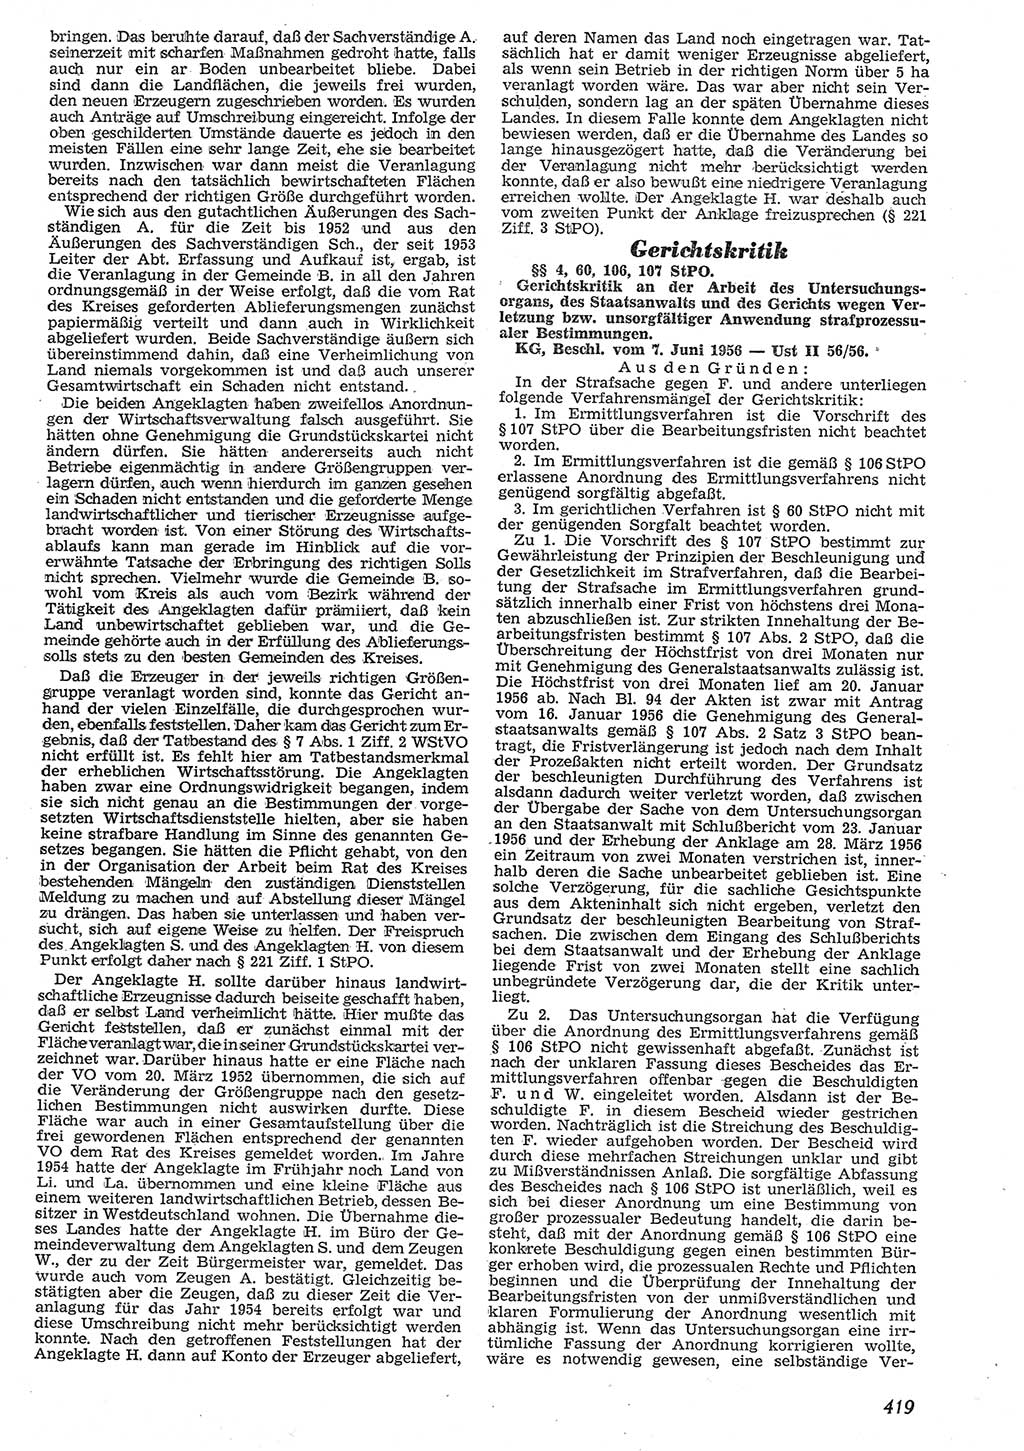 Neue Justiz (NJ), Zeitschrift für Recht und Rechtswissenschaft [Deutsche Demokratische Republik (DDR)], 10. Jahrgang 1956, Seite 419 (NJ DDR 1956, S. 419)